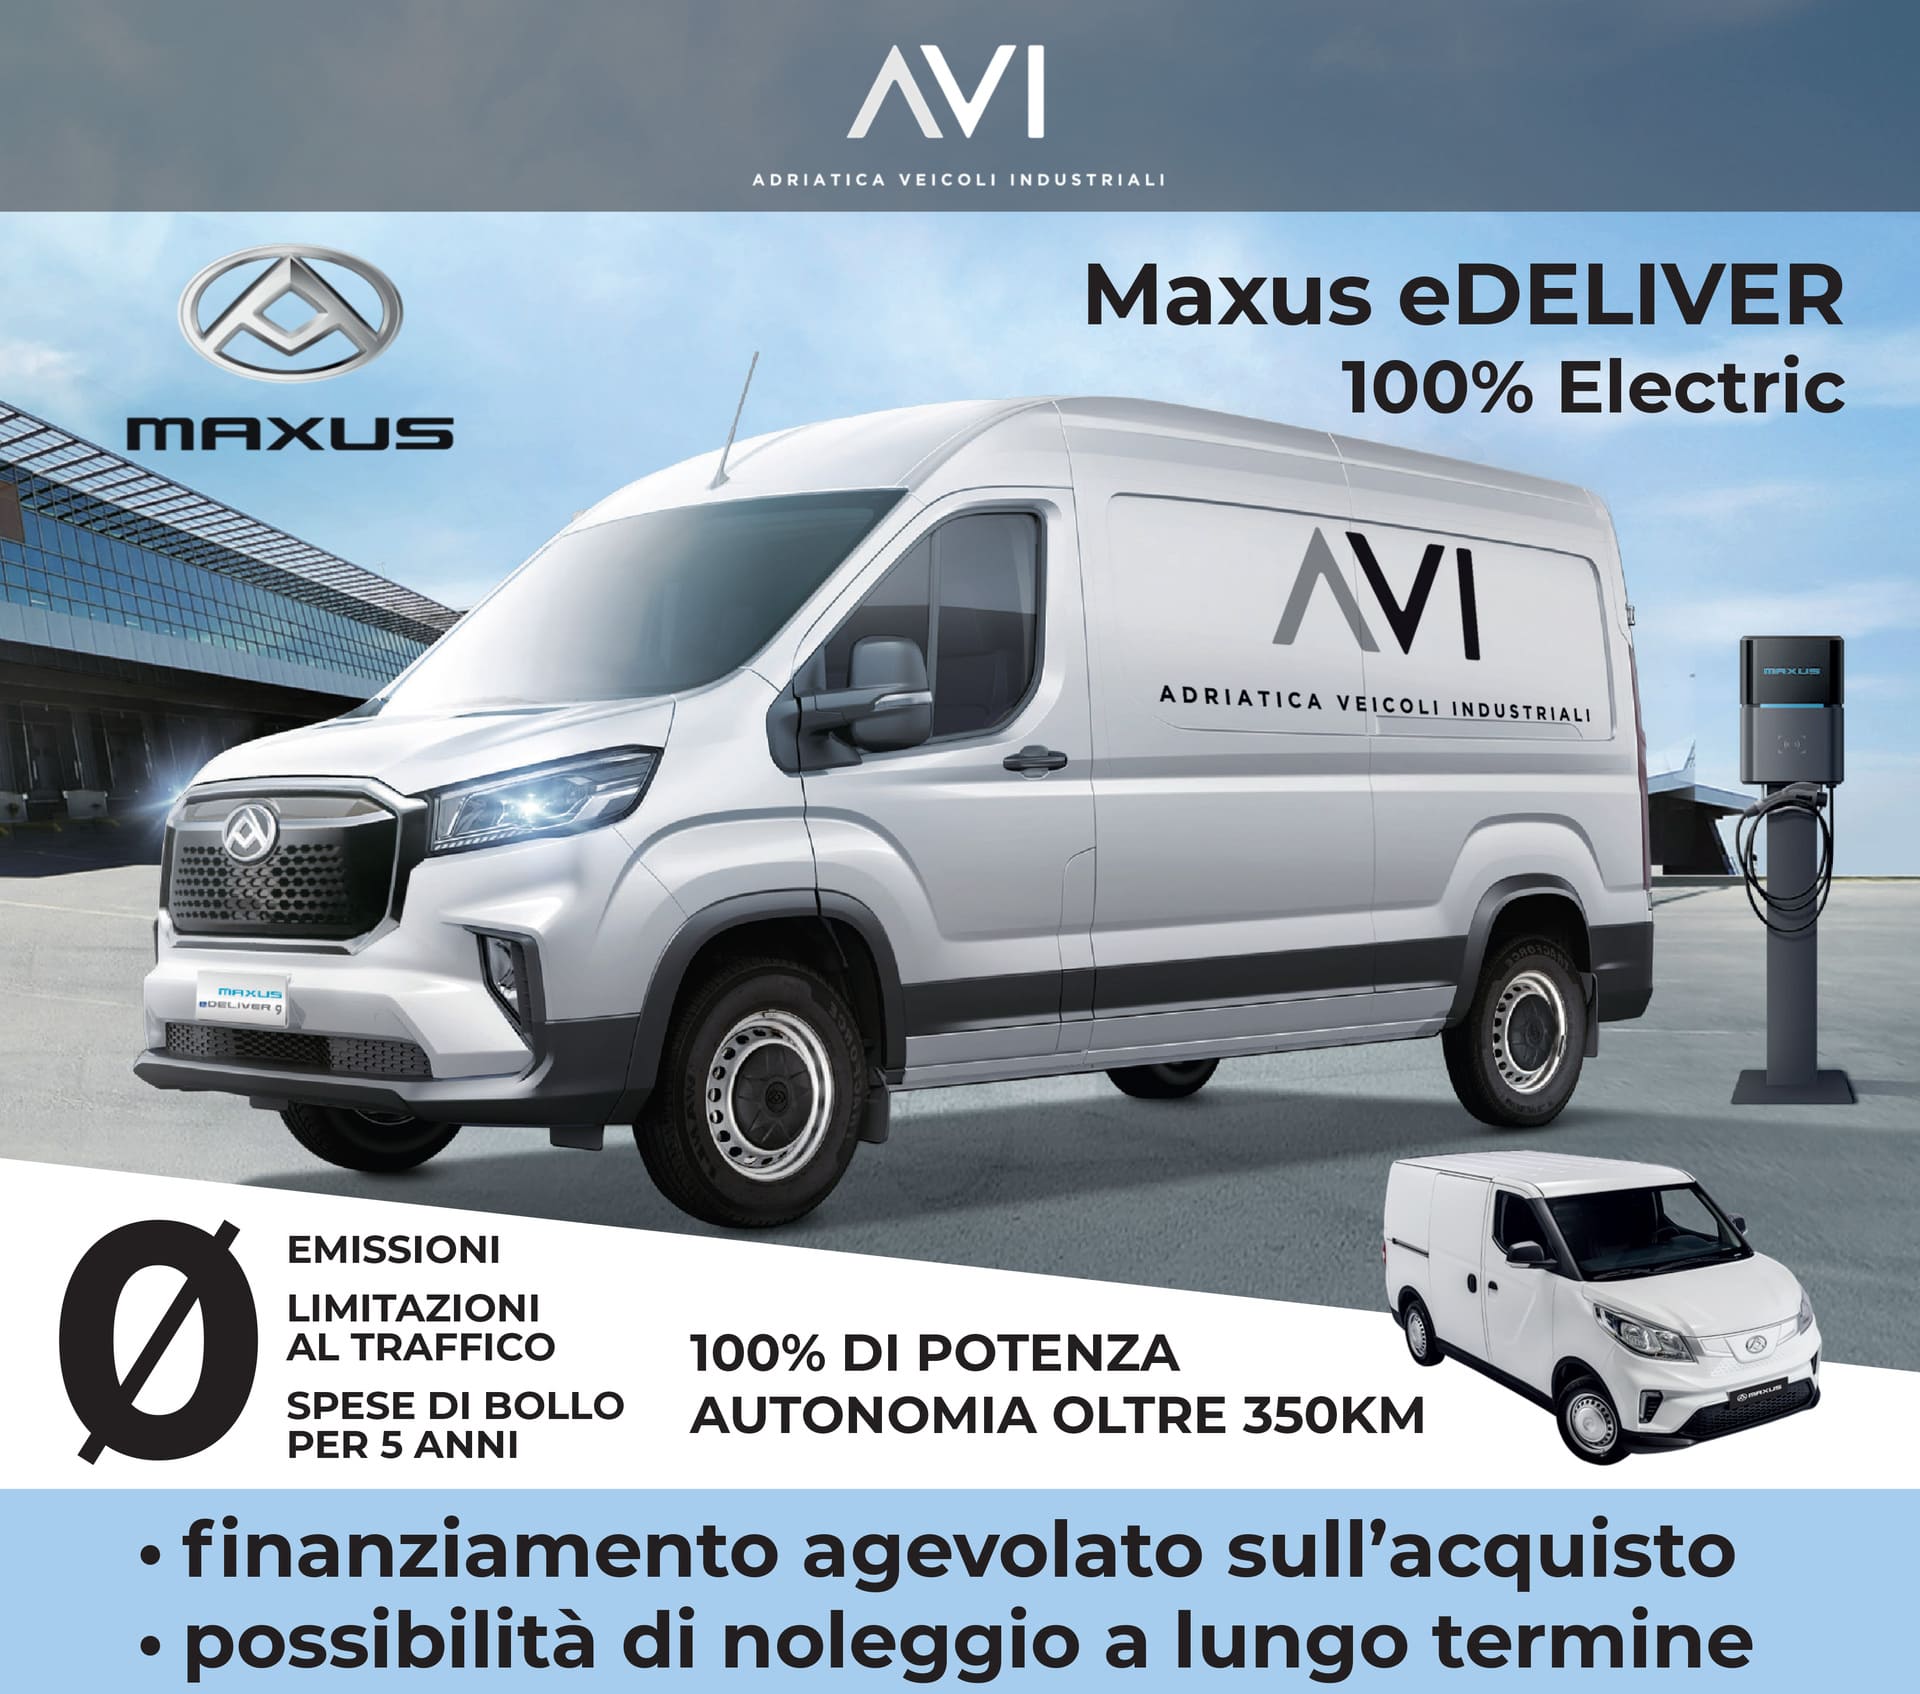 Prova gratuita Maxsus e-delivery